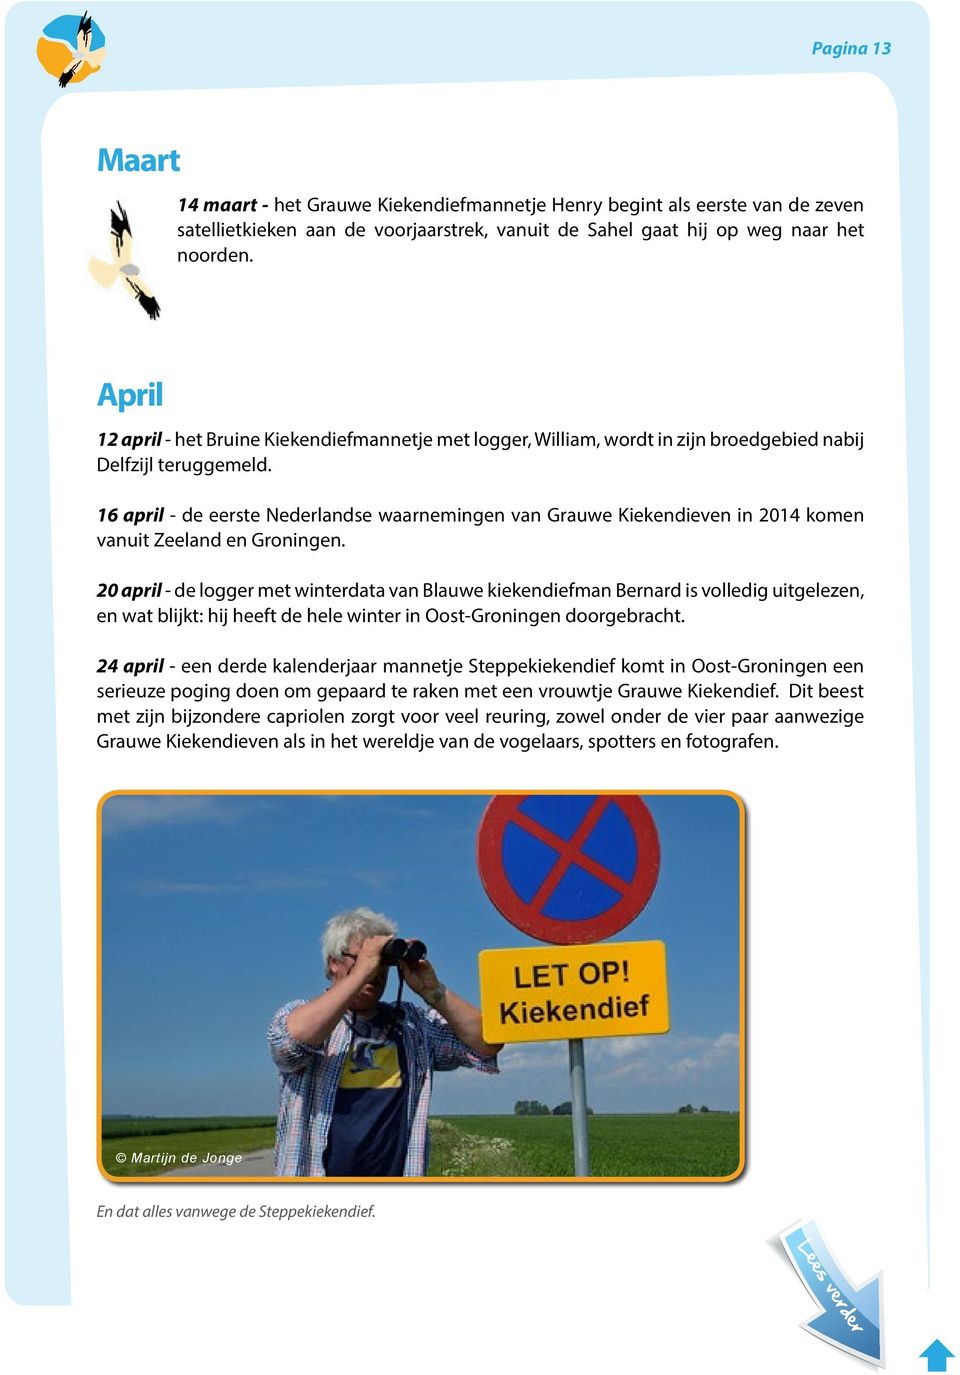 16 april - de eerste Nederlandse waarnemingen van Grauwe Kiekendieven in 2014 komen vanuit Zeeland en Groningen.